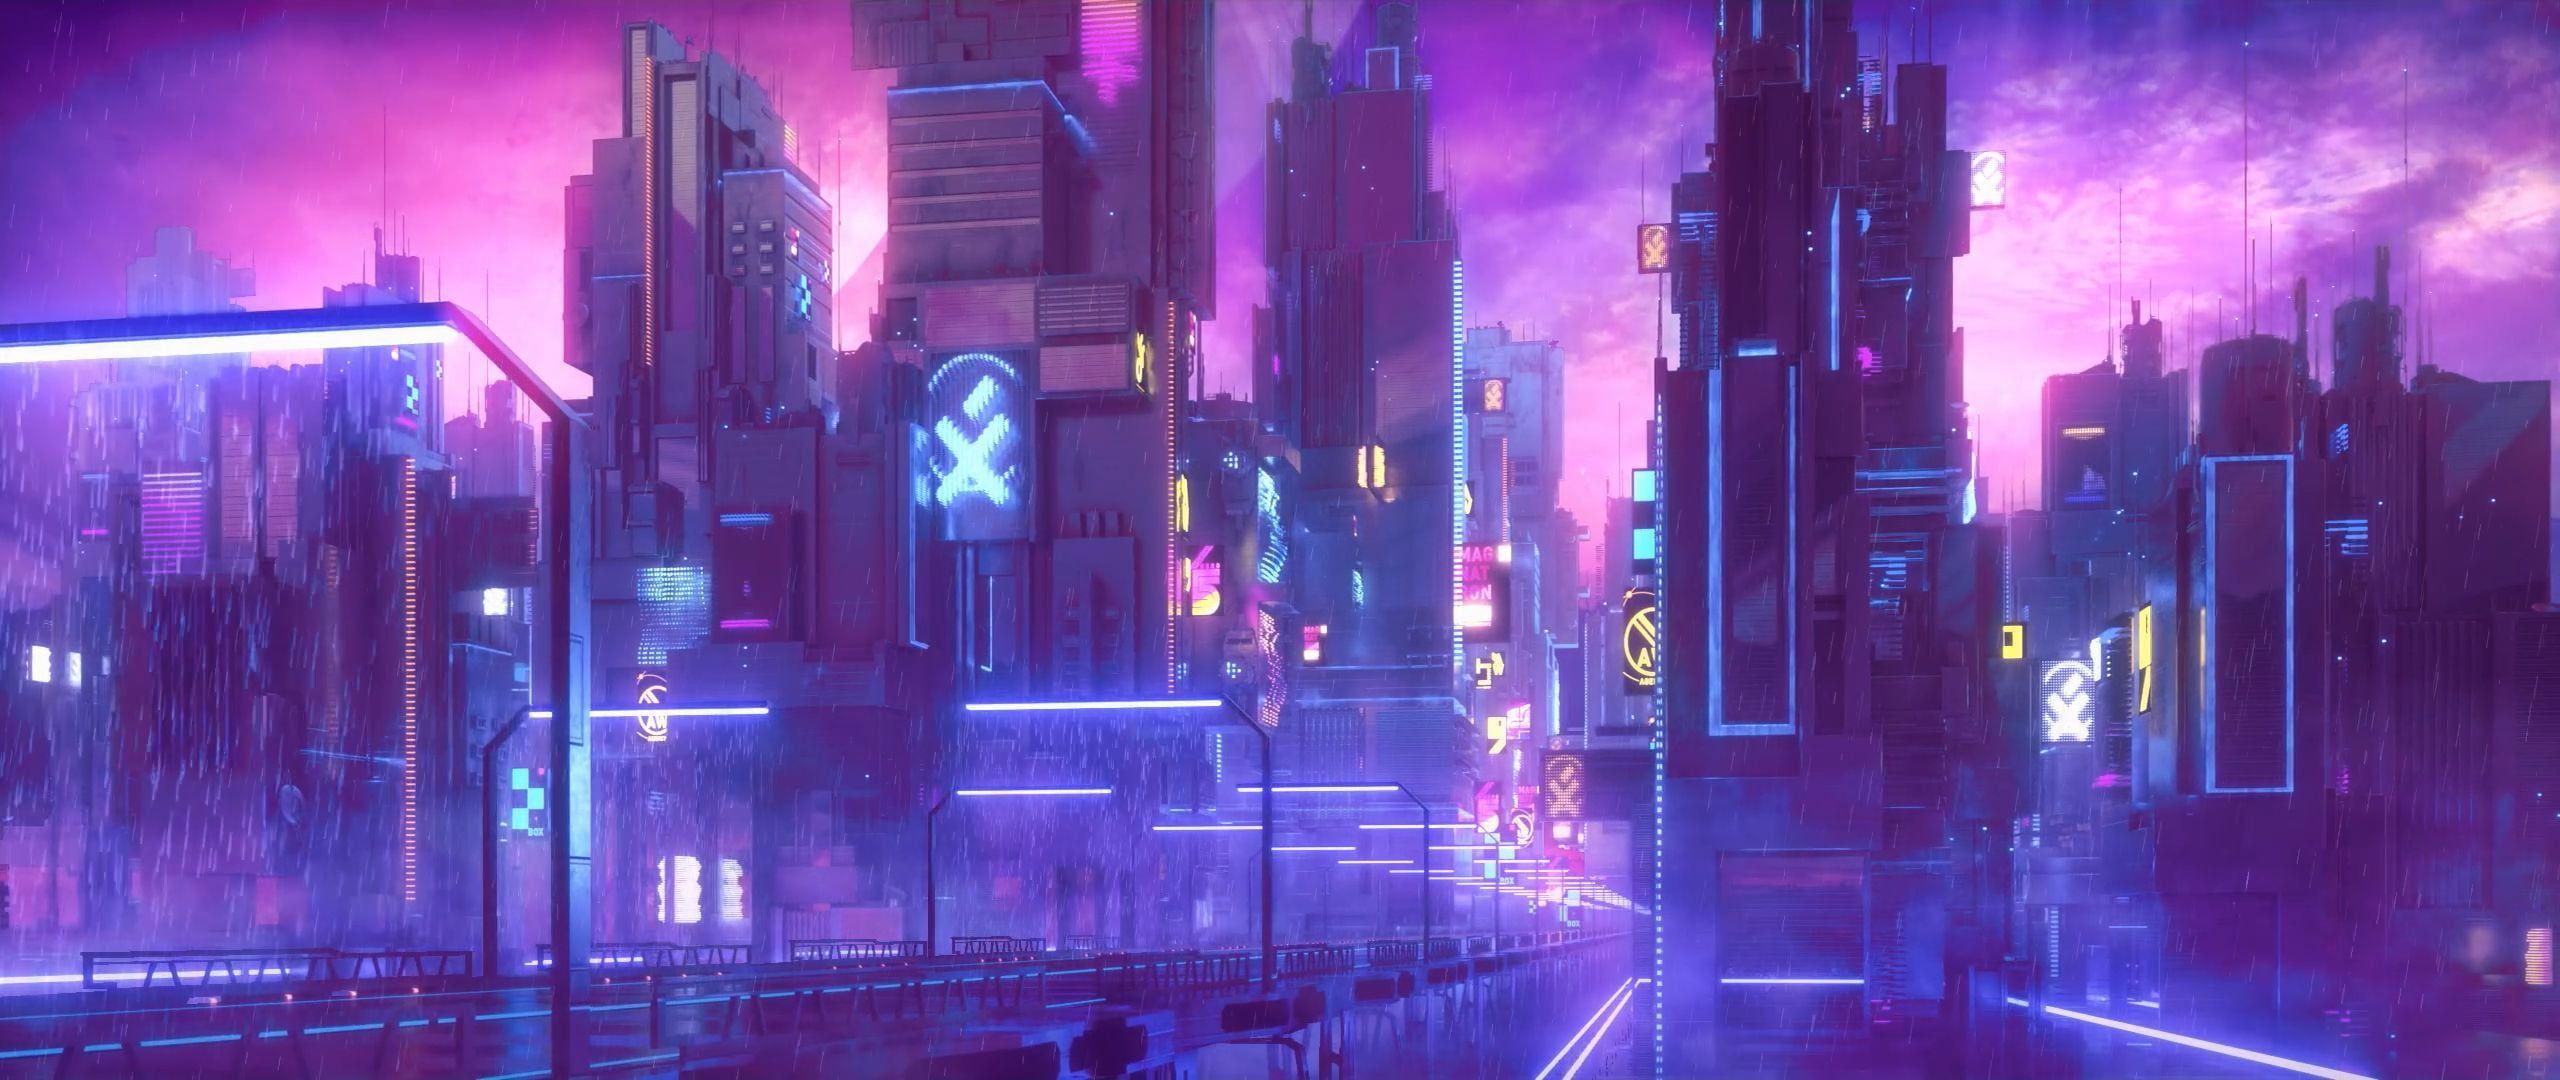 Wallpaper Cyberpunk neon city lights purple by 8scorpion on DeviantArt